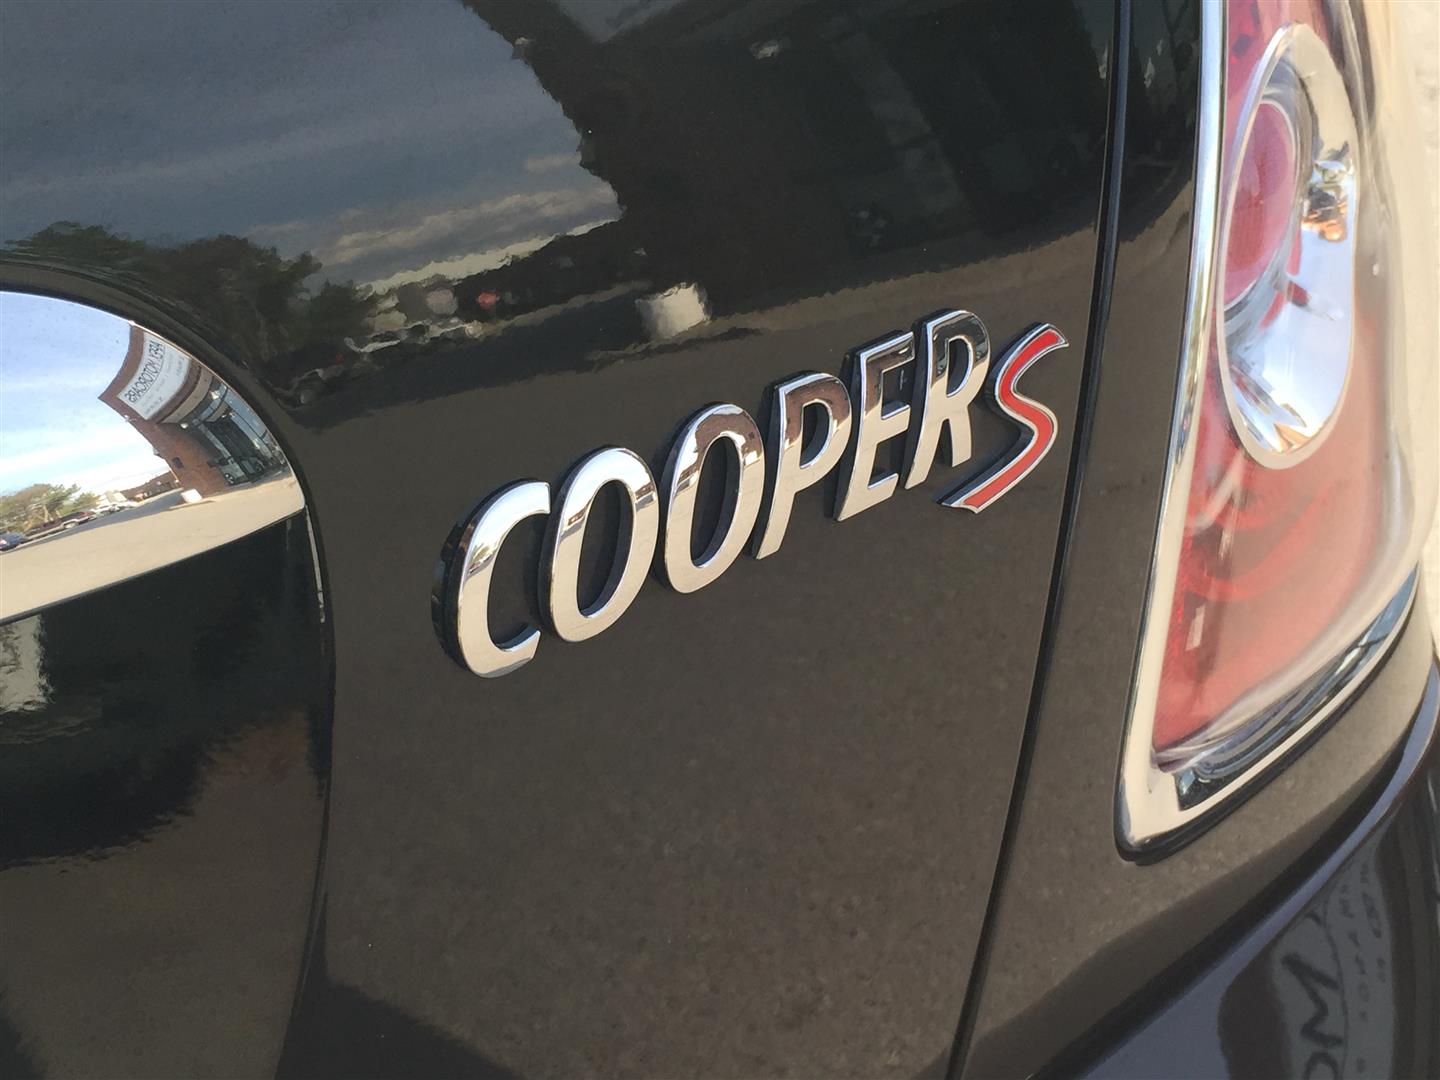 MINI Cooper S, 43000 km, 2 doors, Black, Vaughan